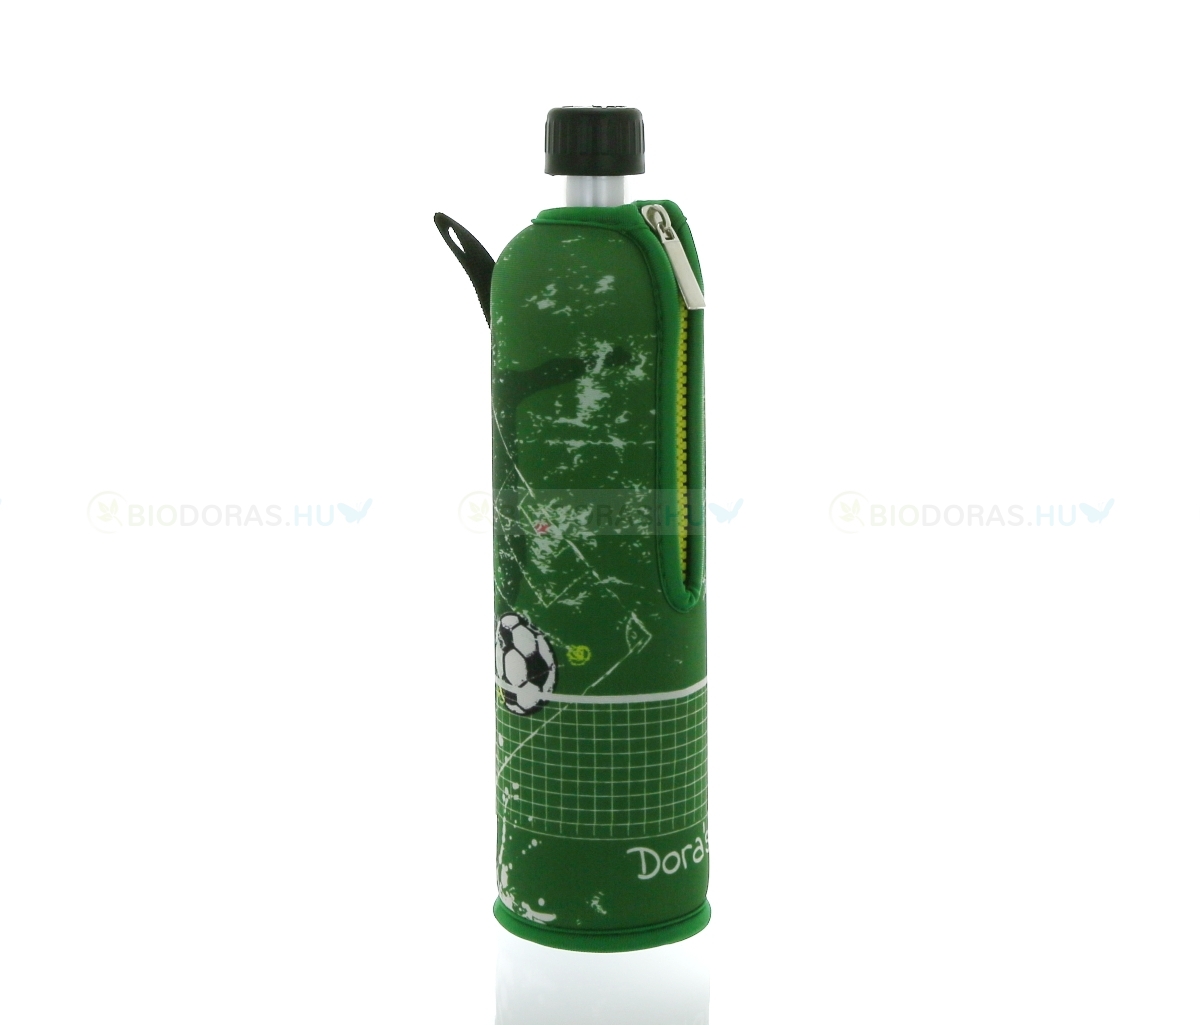 DORAS Üvegkulacs (üvegpalack) zöld, foci mintás neoprén huzattal - 500 ml